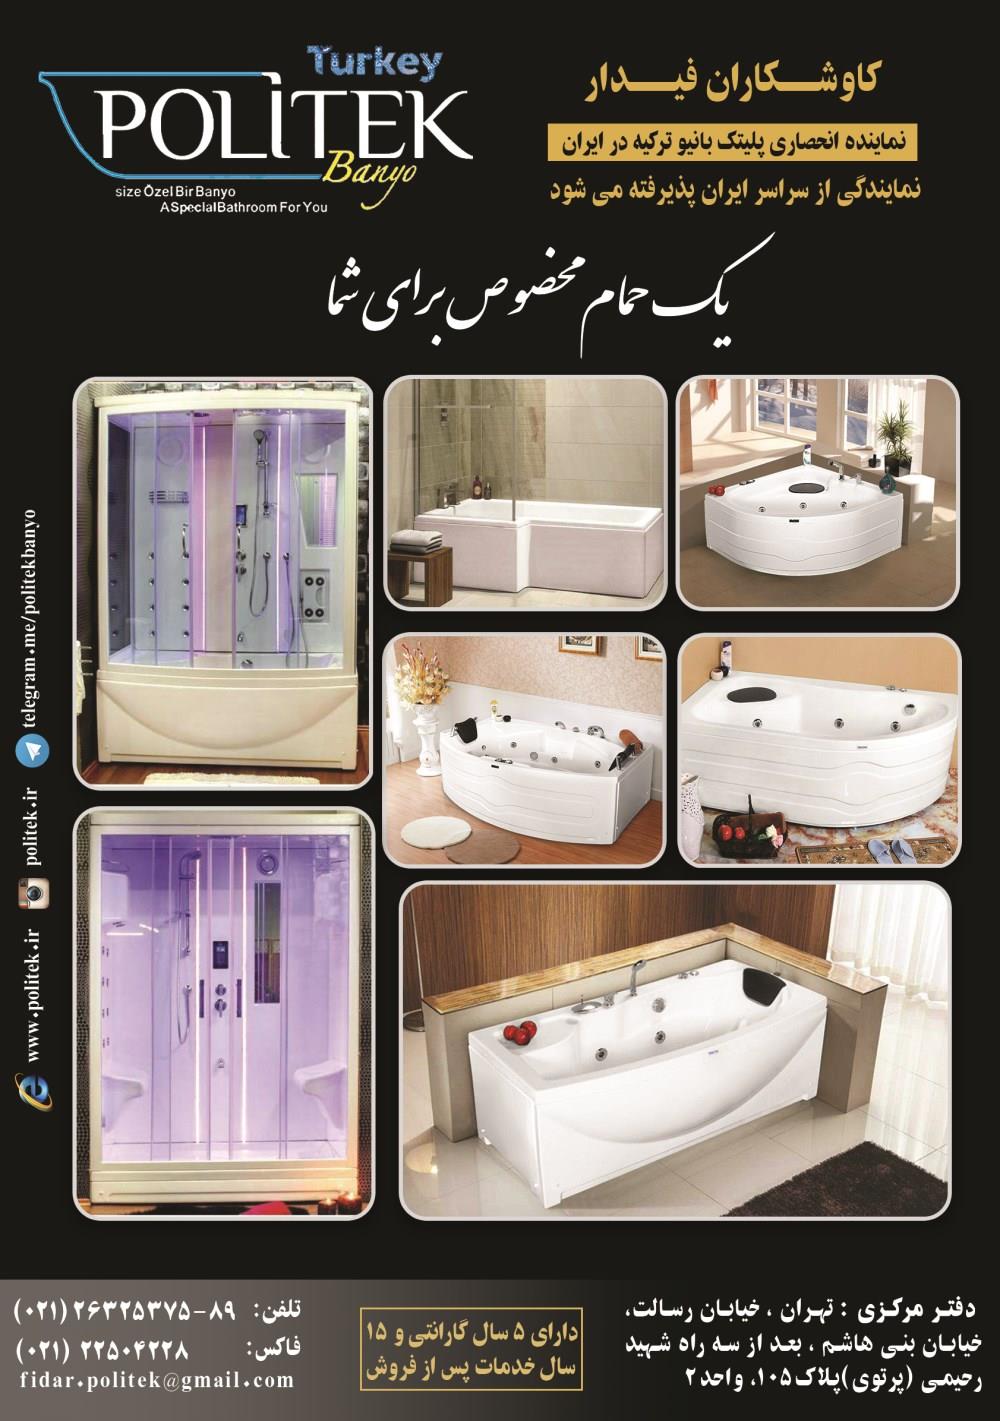 یک-حمام-مخصوص-برای-شما-آگهی-در-شماره-318